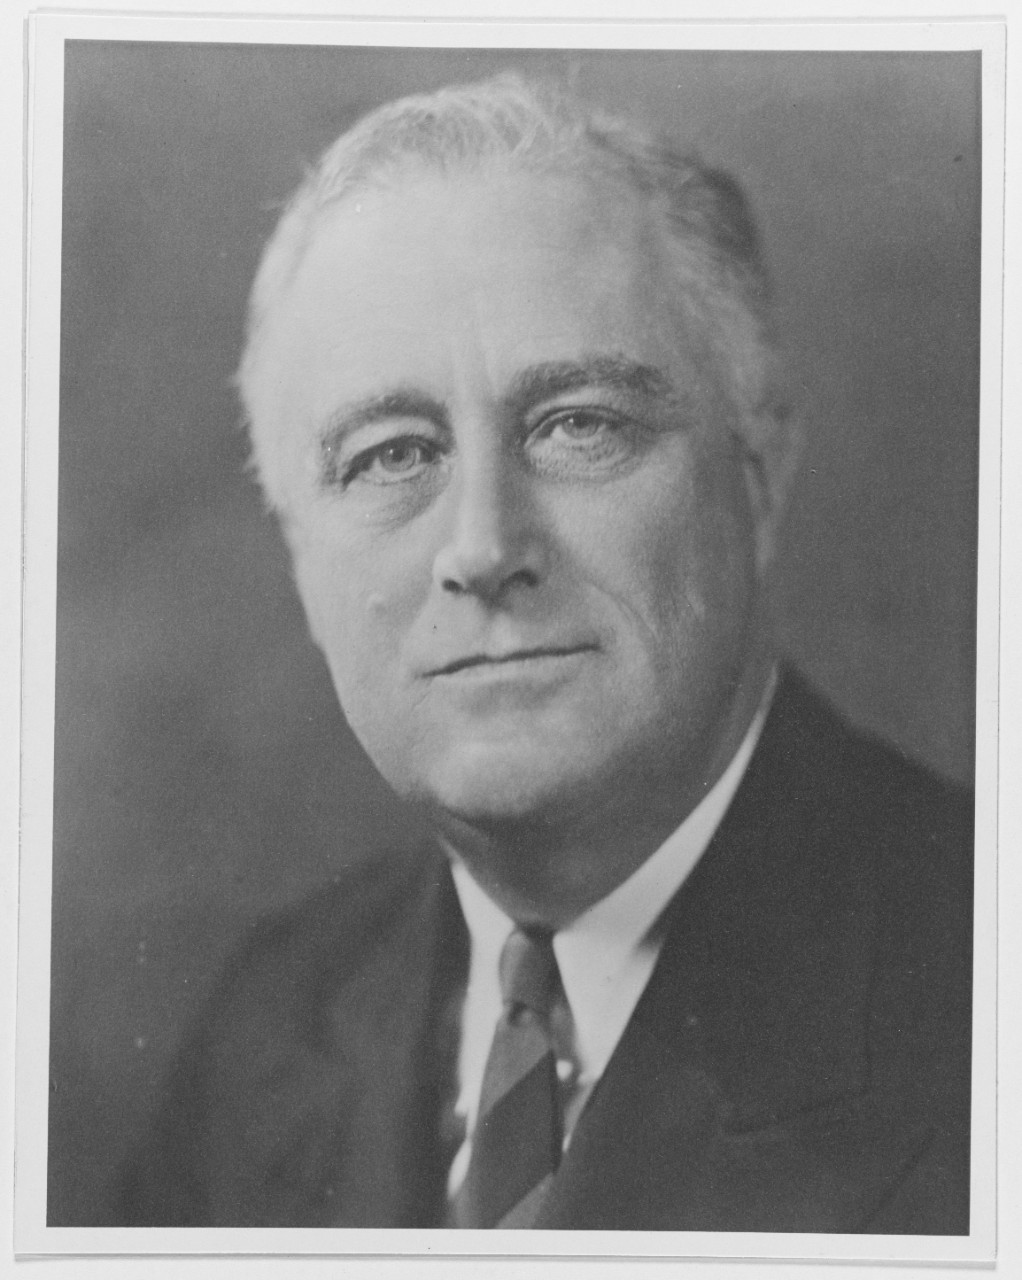 President Franklin Delano Roosevelt